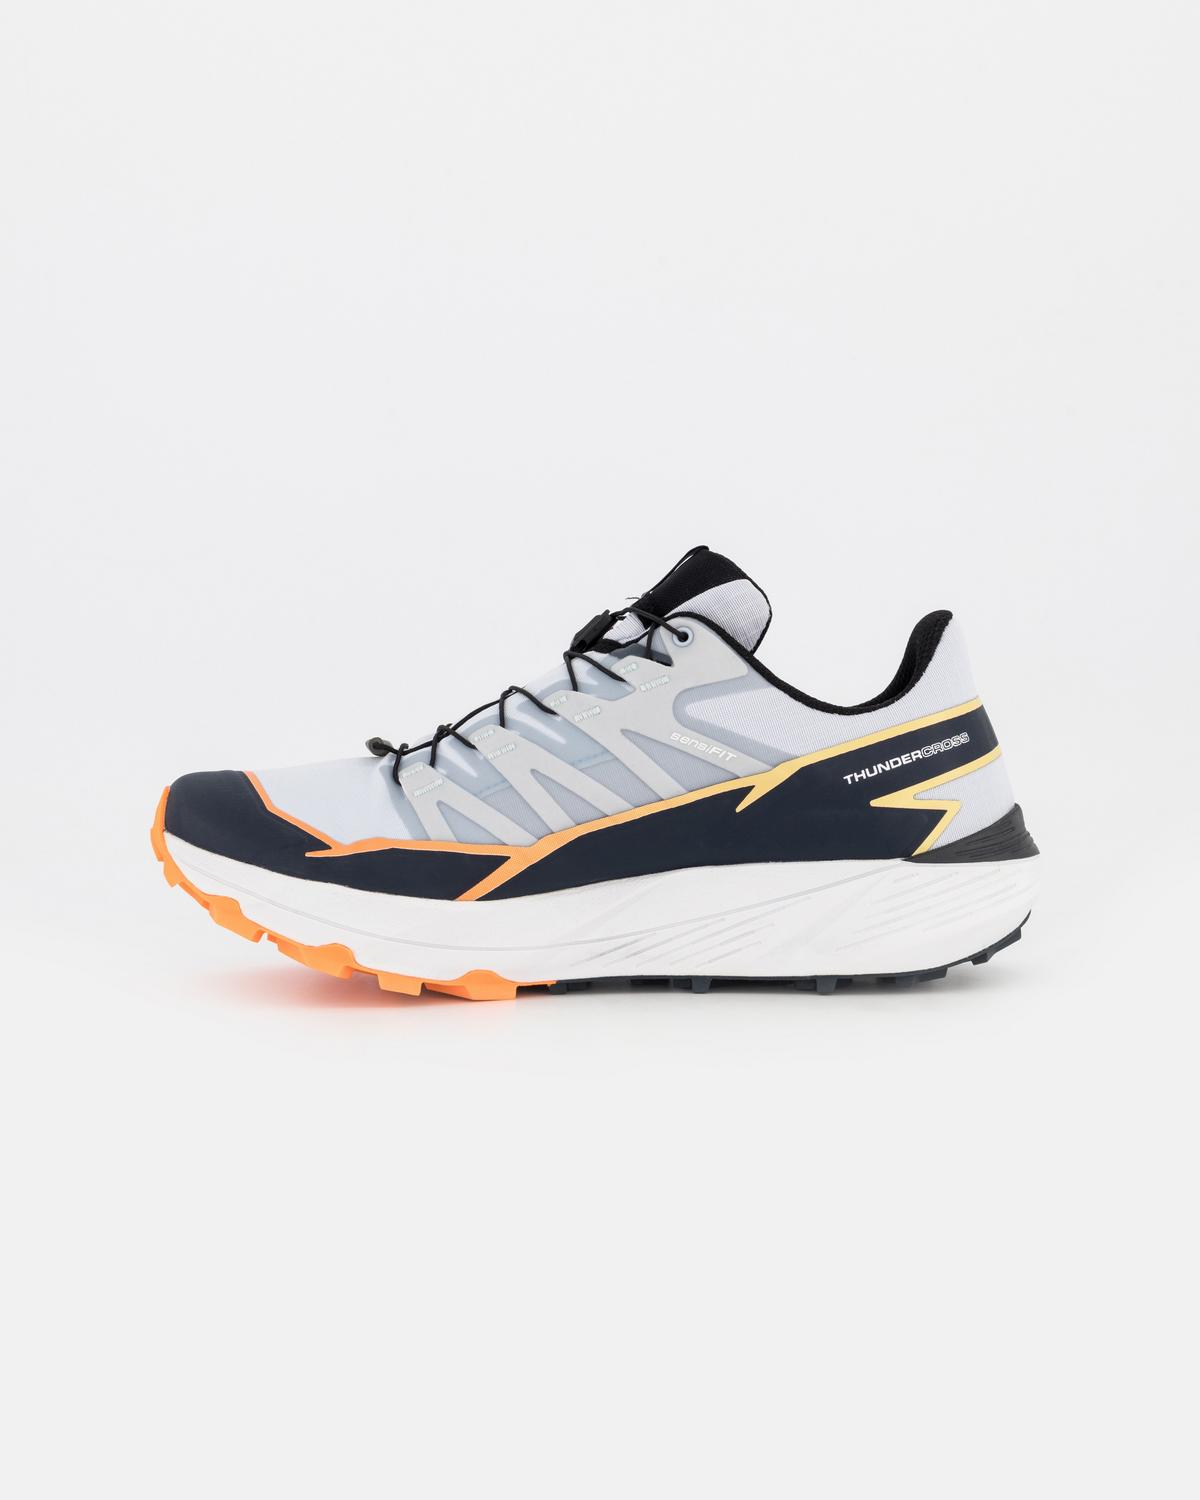 Salomon Men's Thundercross Trail Running Shoes -  lightgrey